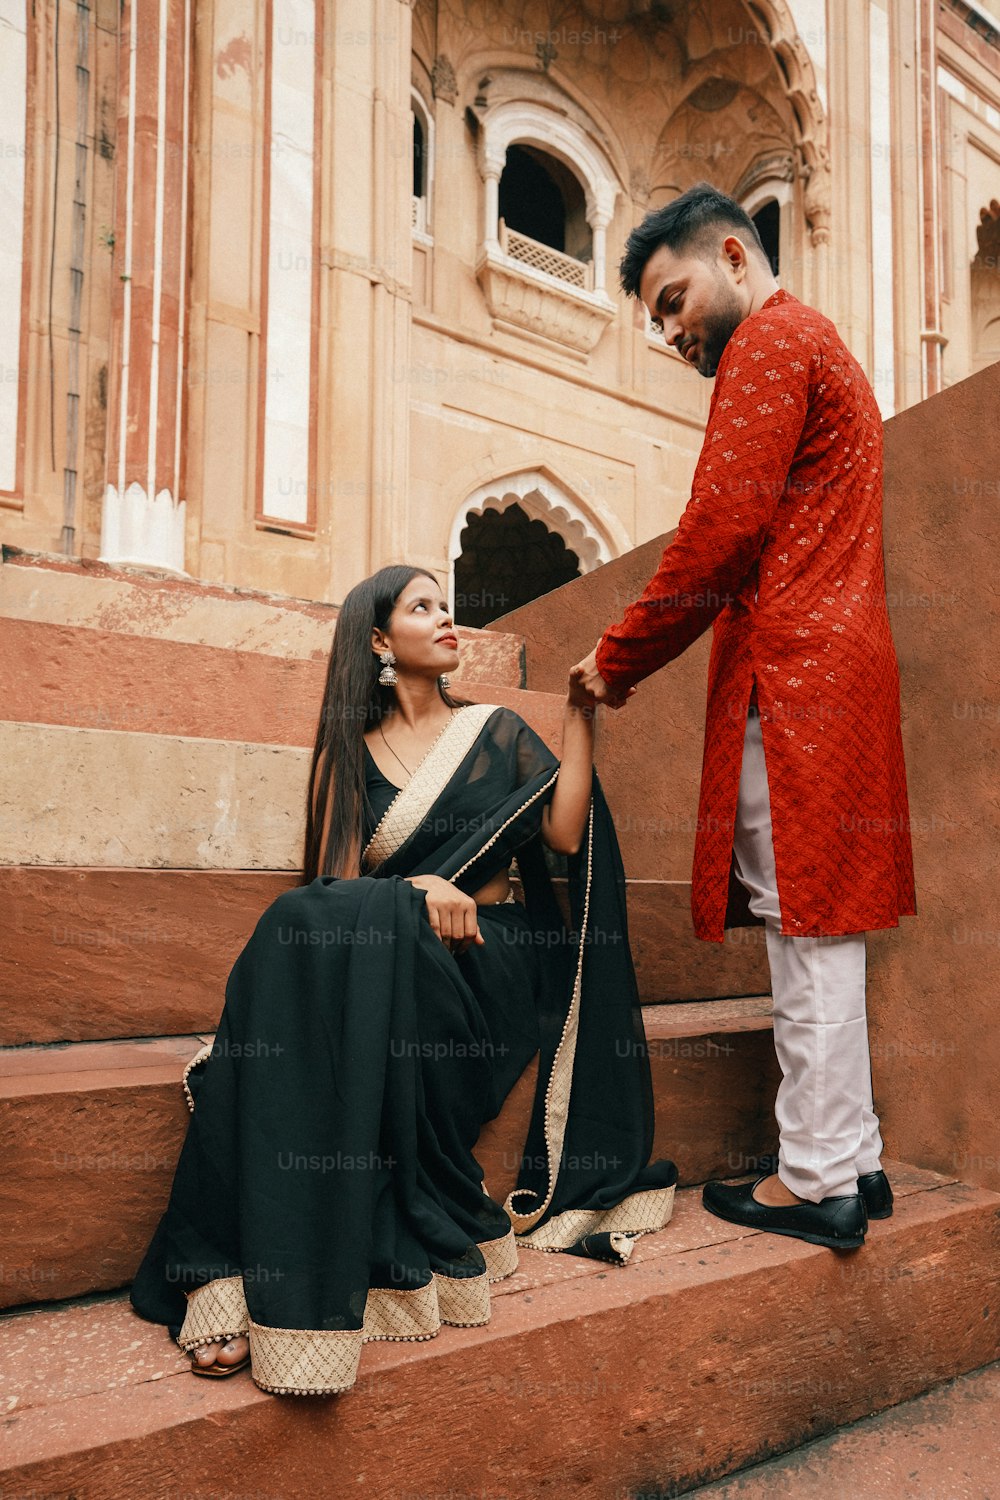 Un hombre con una chaqueta roja de pie junto a una mujer con un sari negro